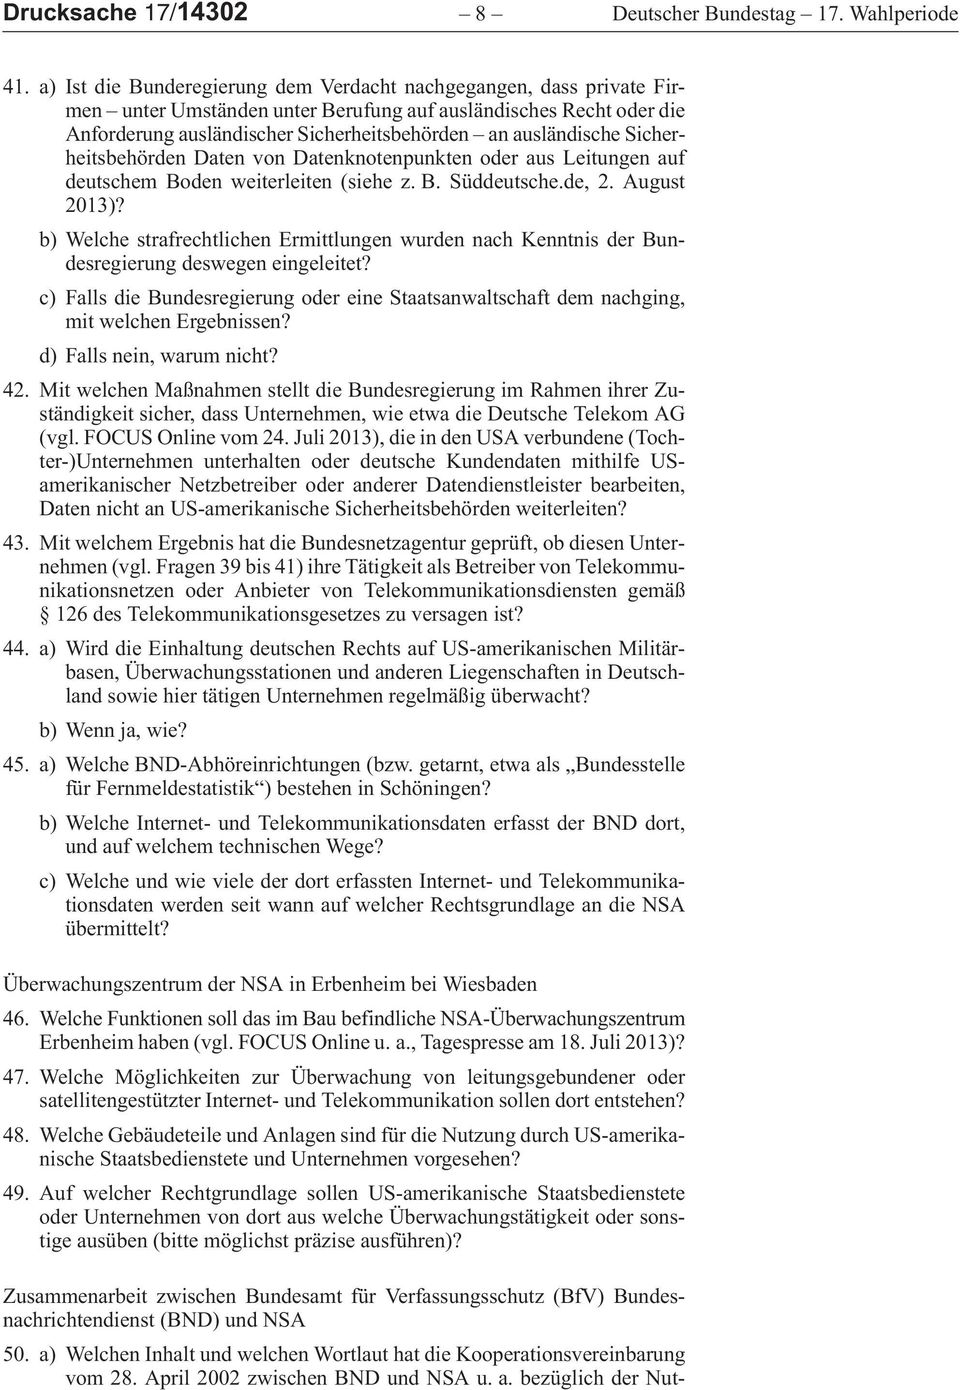 anausländischesicherheitsbehördendatenvondatenknotenpunktenoderausleitungenauf deutschembodenweiterleiten (siehez.b.süddeutsche.de,2.august 2013)?